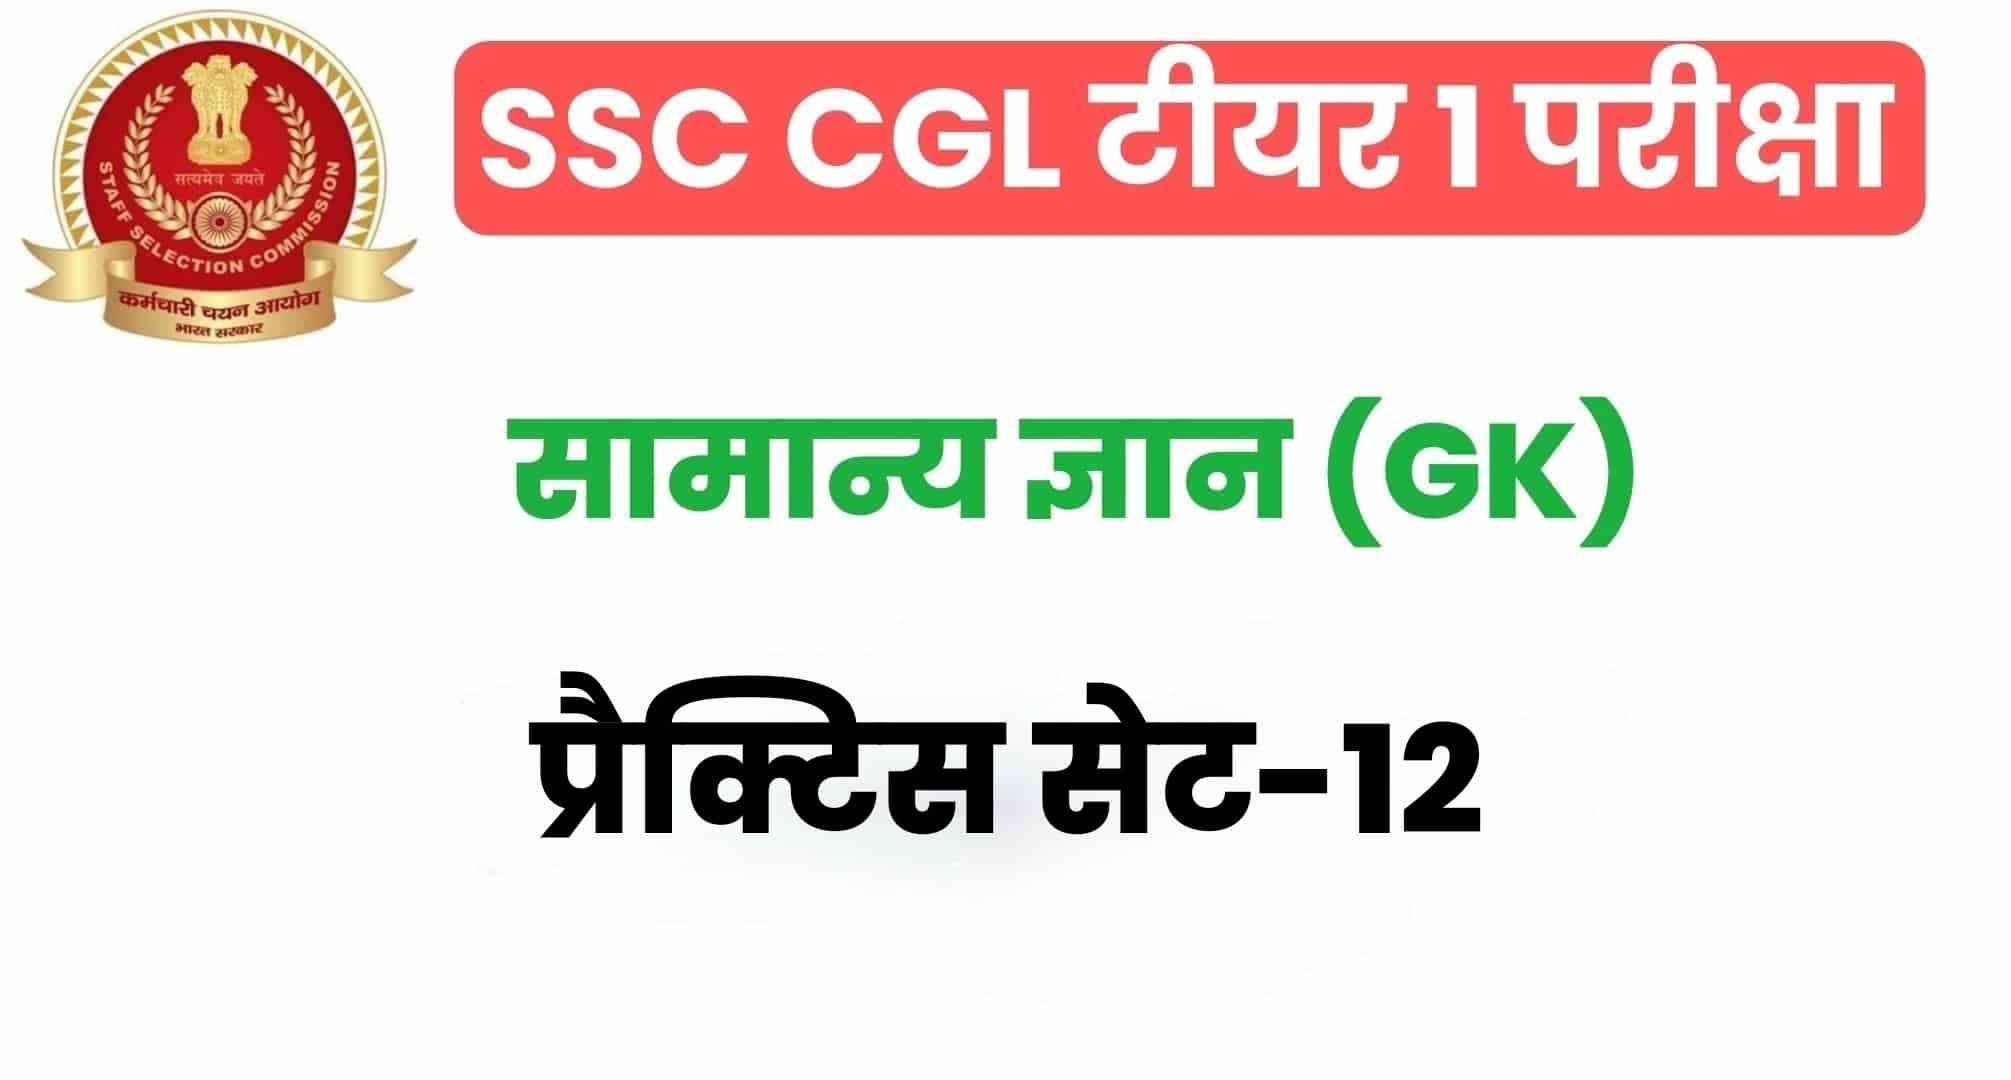 SSC CGL GK/GS प्रैक्टिस सेट 12 :  सामान्य ज्ञान के 25 महत्वपूर्ण प्रश्न, परीक्षा से पहले अवश्य अध्ययन करें